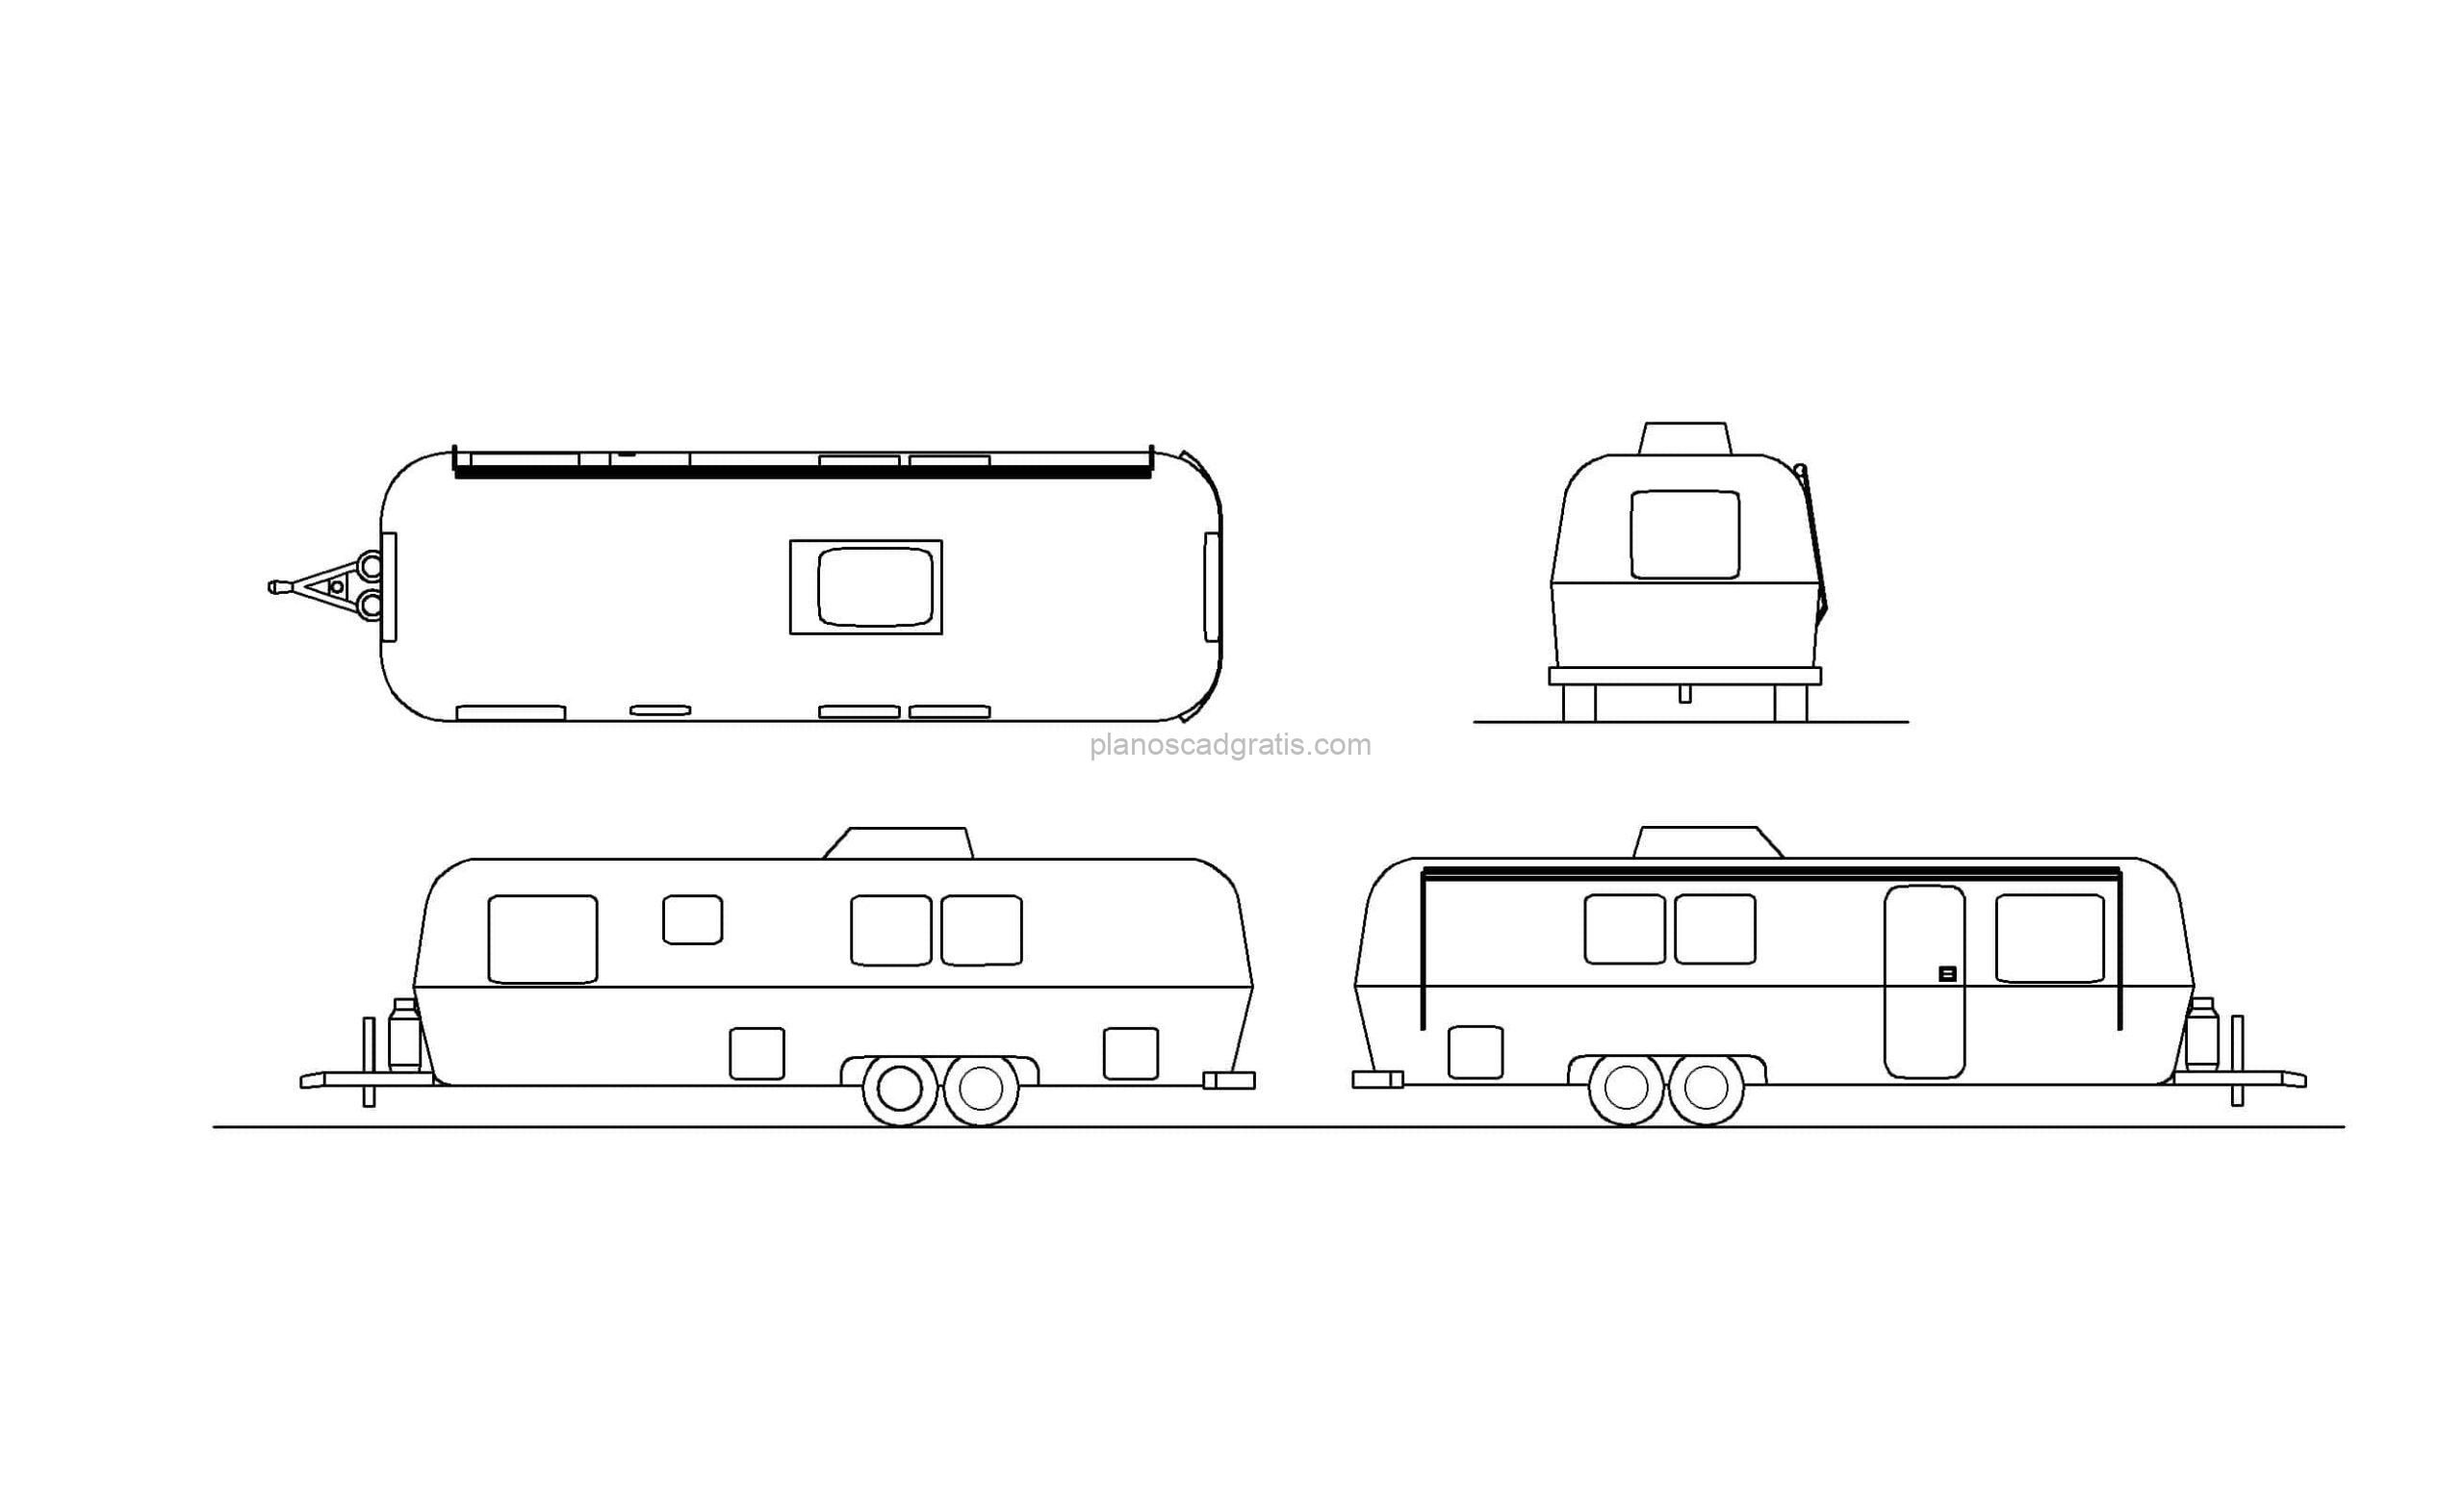 dibujo de autocad de una caravana, vistas en planta y elevaciones para descarga gratis en formato dwg